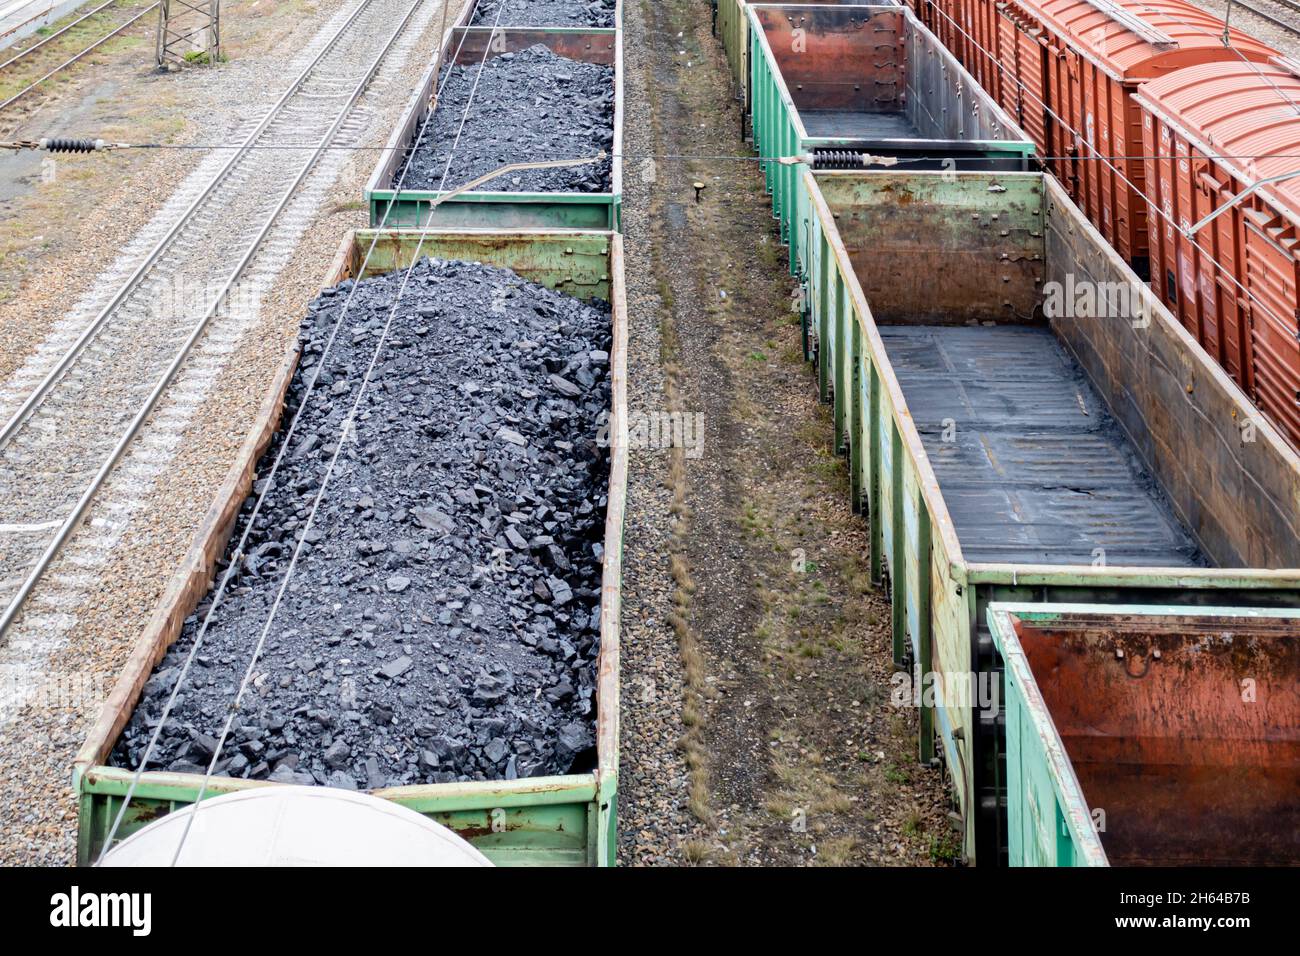 Trains de marchandises wagons ouverts chargés de cargaison de charbon, stationnaires dans un dépôt sur rails.Karaganda, Kazakhstan, Asie centrale Banque D'Images